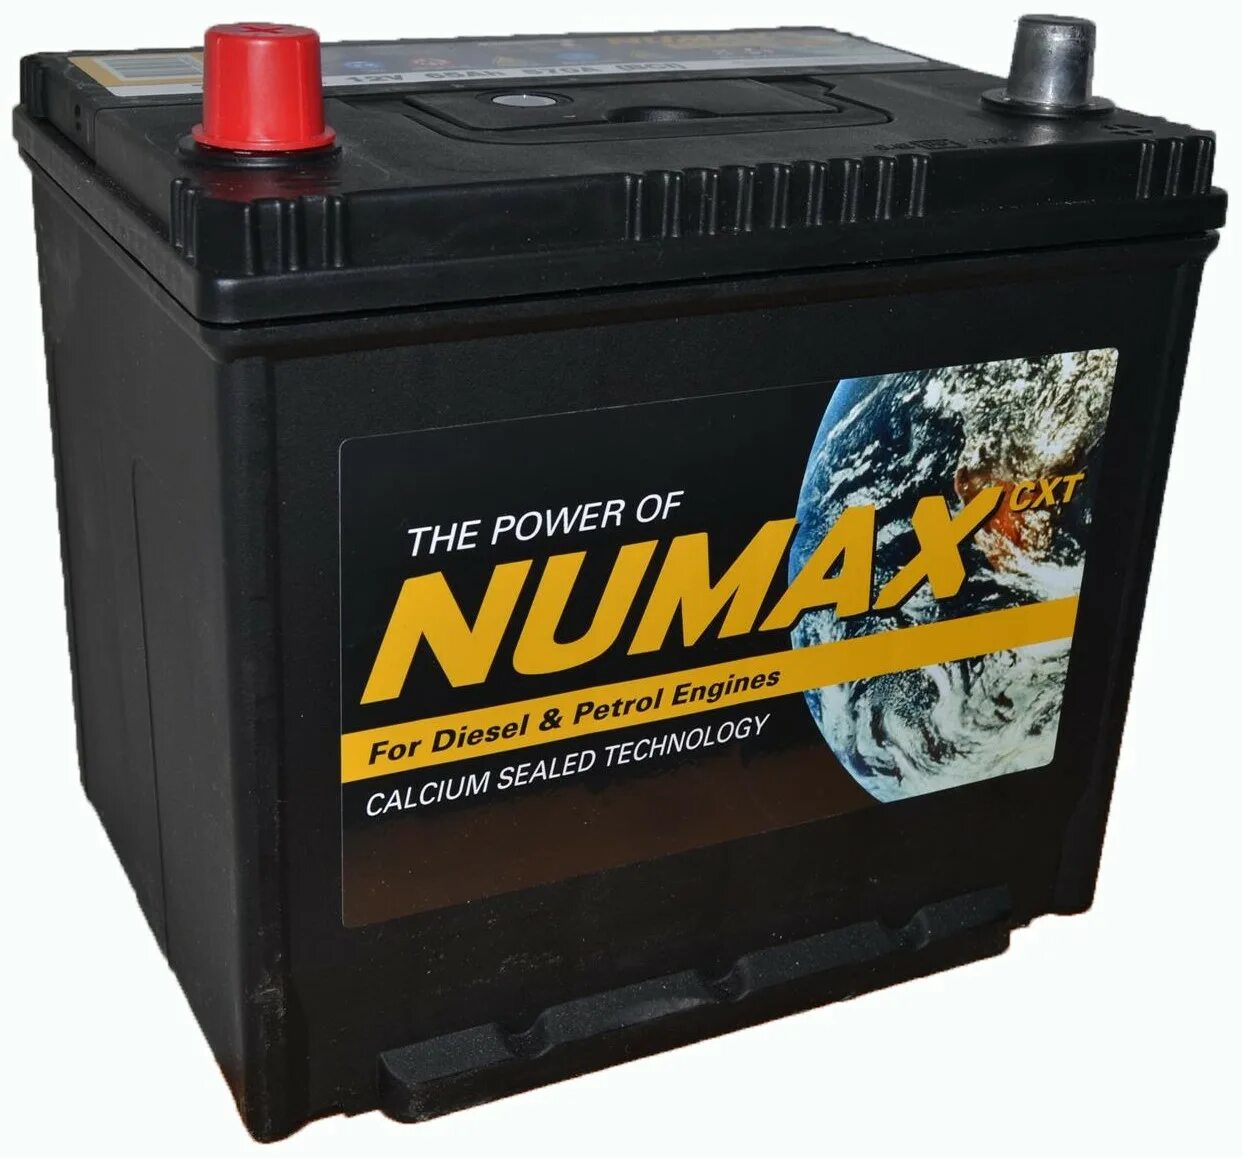 Battery 65. АКБ 190 европолярность. Numax 65a. 69032 Numax аккумулятор. Аккумуляторы 65 Акумо.